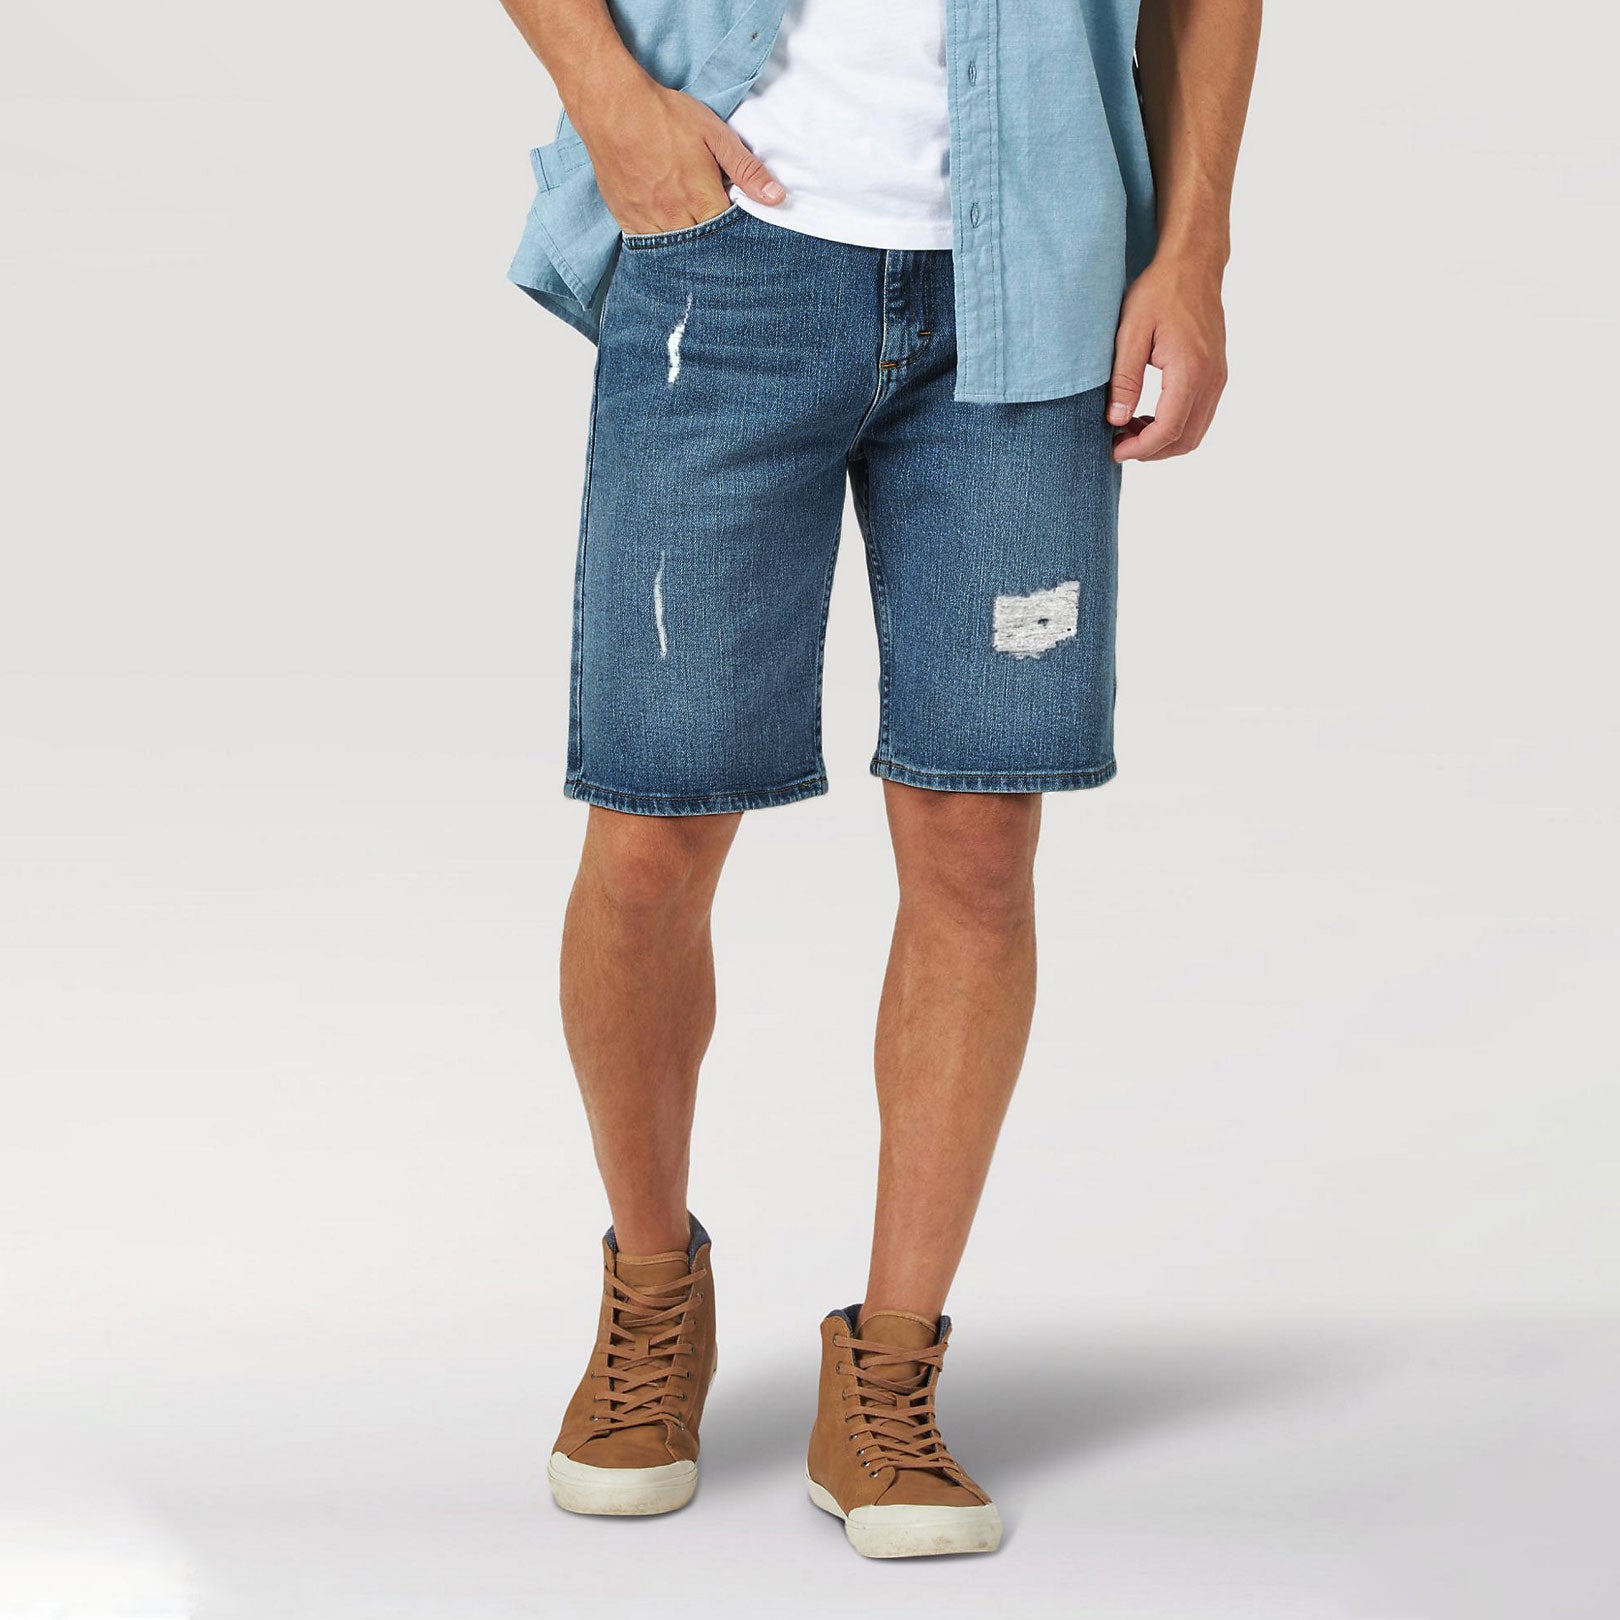 Men's Denim shorts for Summer